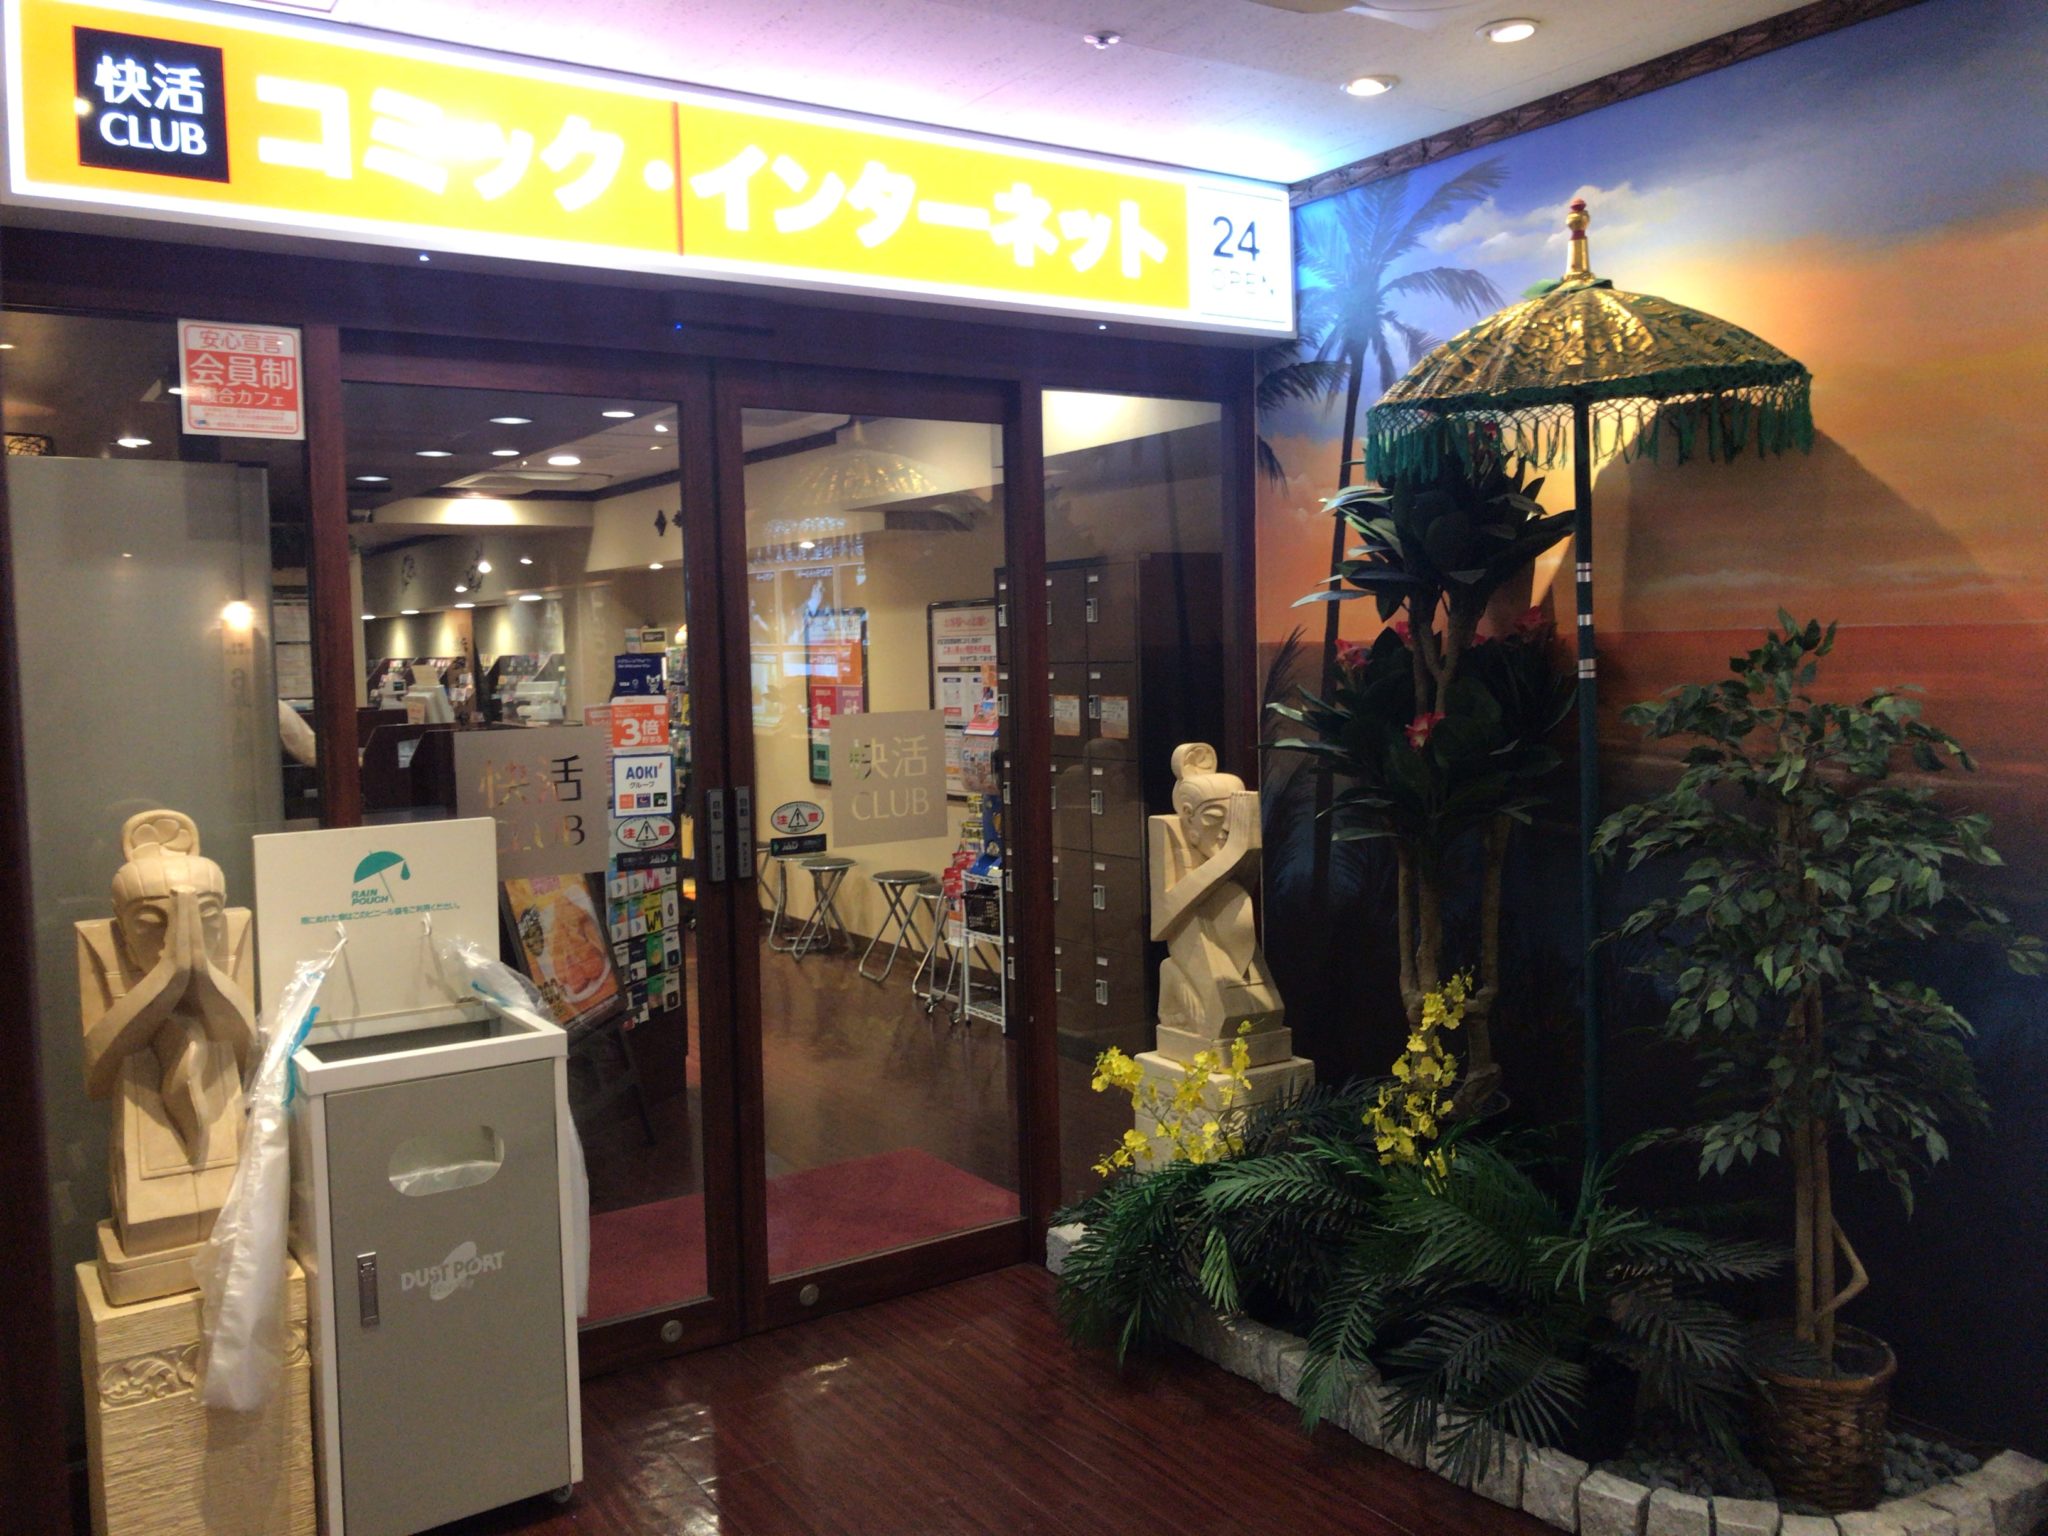 池袋駅から徒歩5分 快活club池袋サンシャイン60通り店をレポート 日本全国のネカフェ 漫画喫茶マップのヒマップ